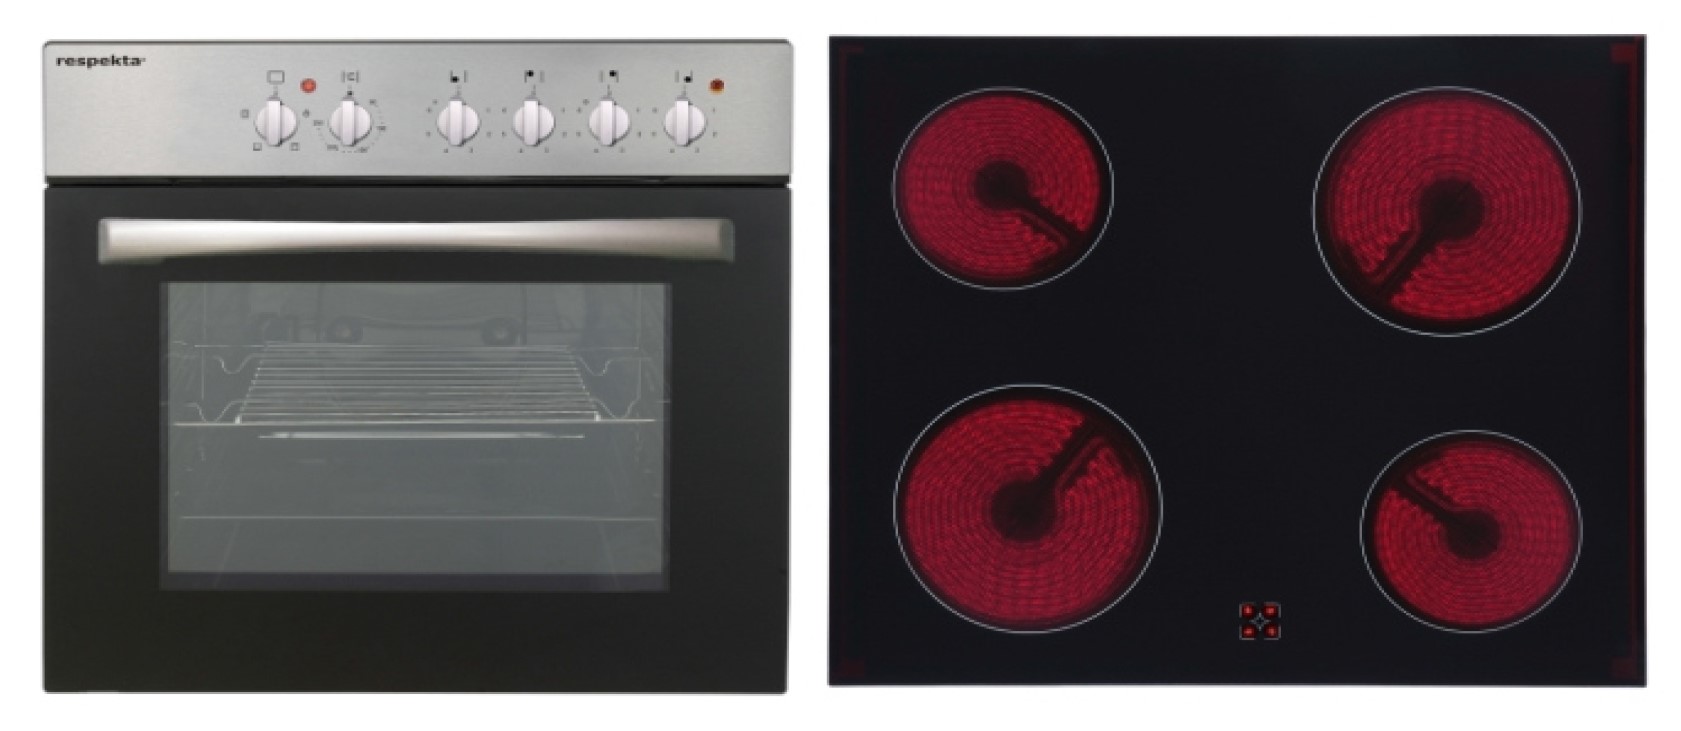 Menke Küchenzeile mit E-Geräten & Geschirrspüler - 310 cm breit – Smart Lack Hochglanz Lava